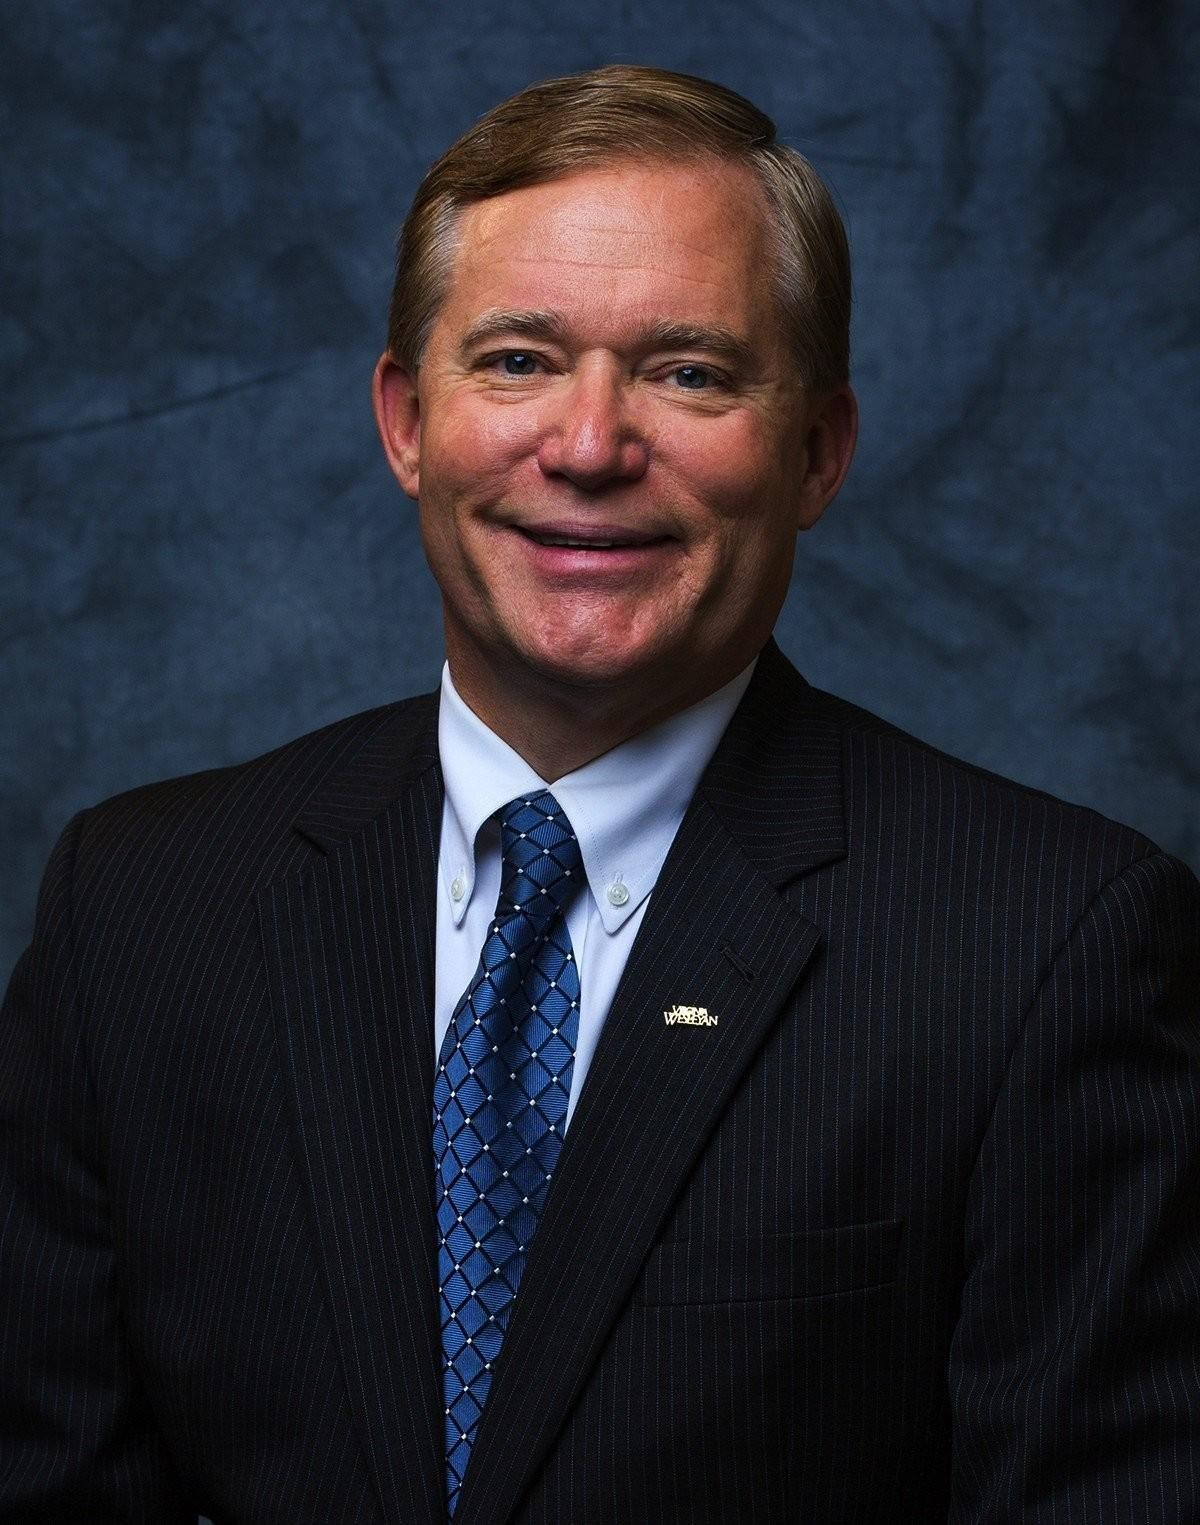 Scott D. Miller is president of Virginia Wesleyan University in Virginia Beach.